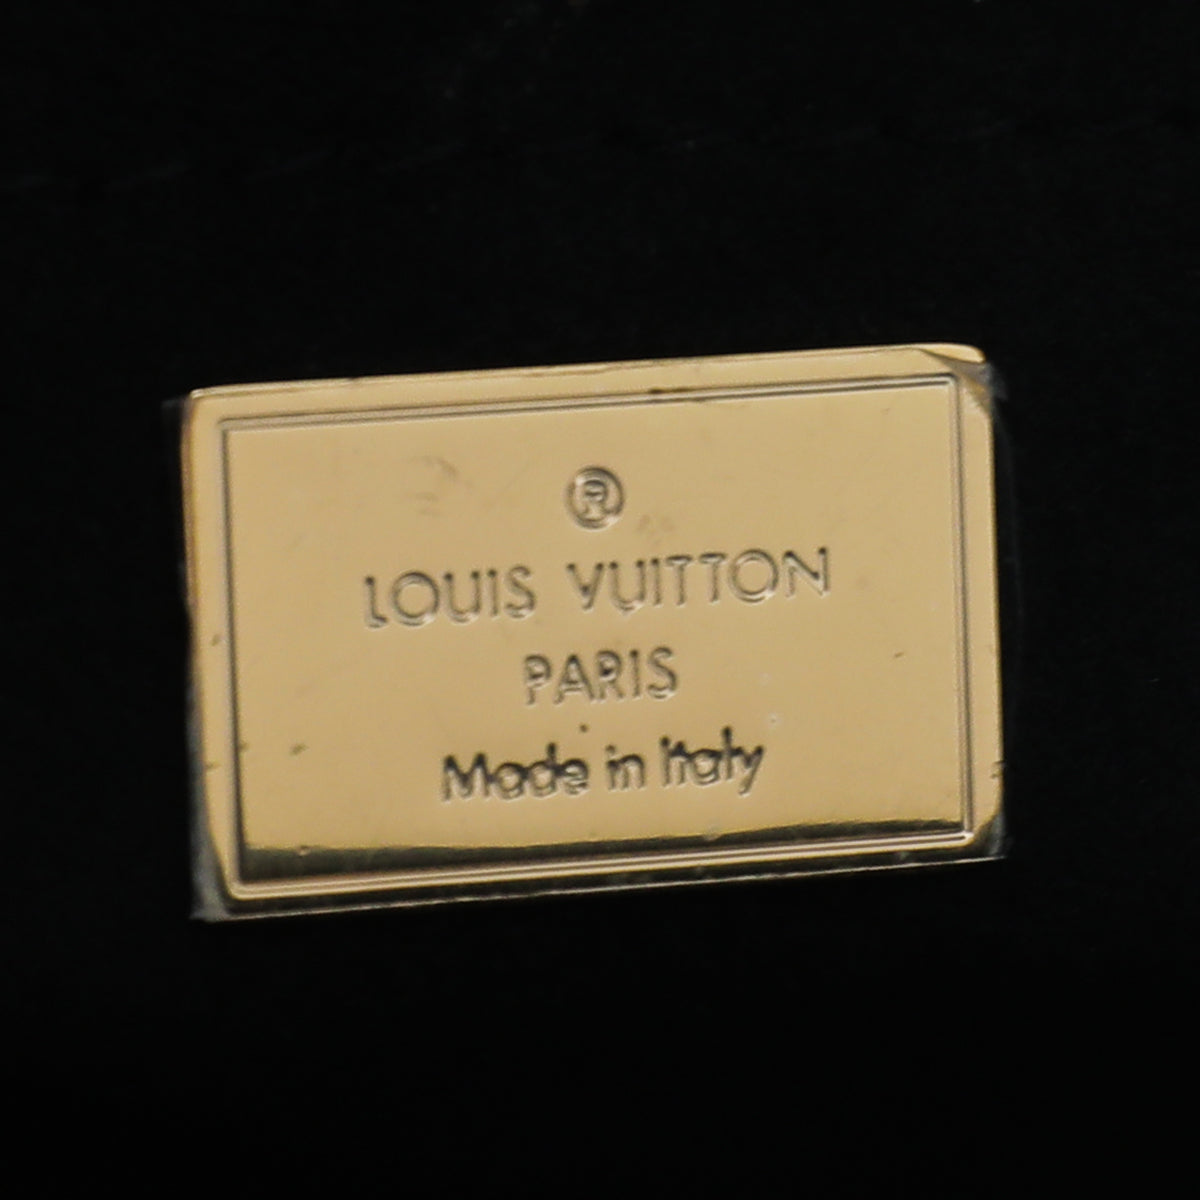 Shop Louis Vuitton Monogram Street Style Chain Bridal Logo Shoulder Bags  (M82521) by RedondoBeach-LA